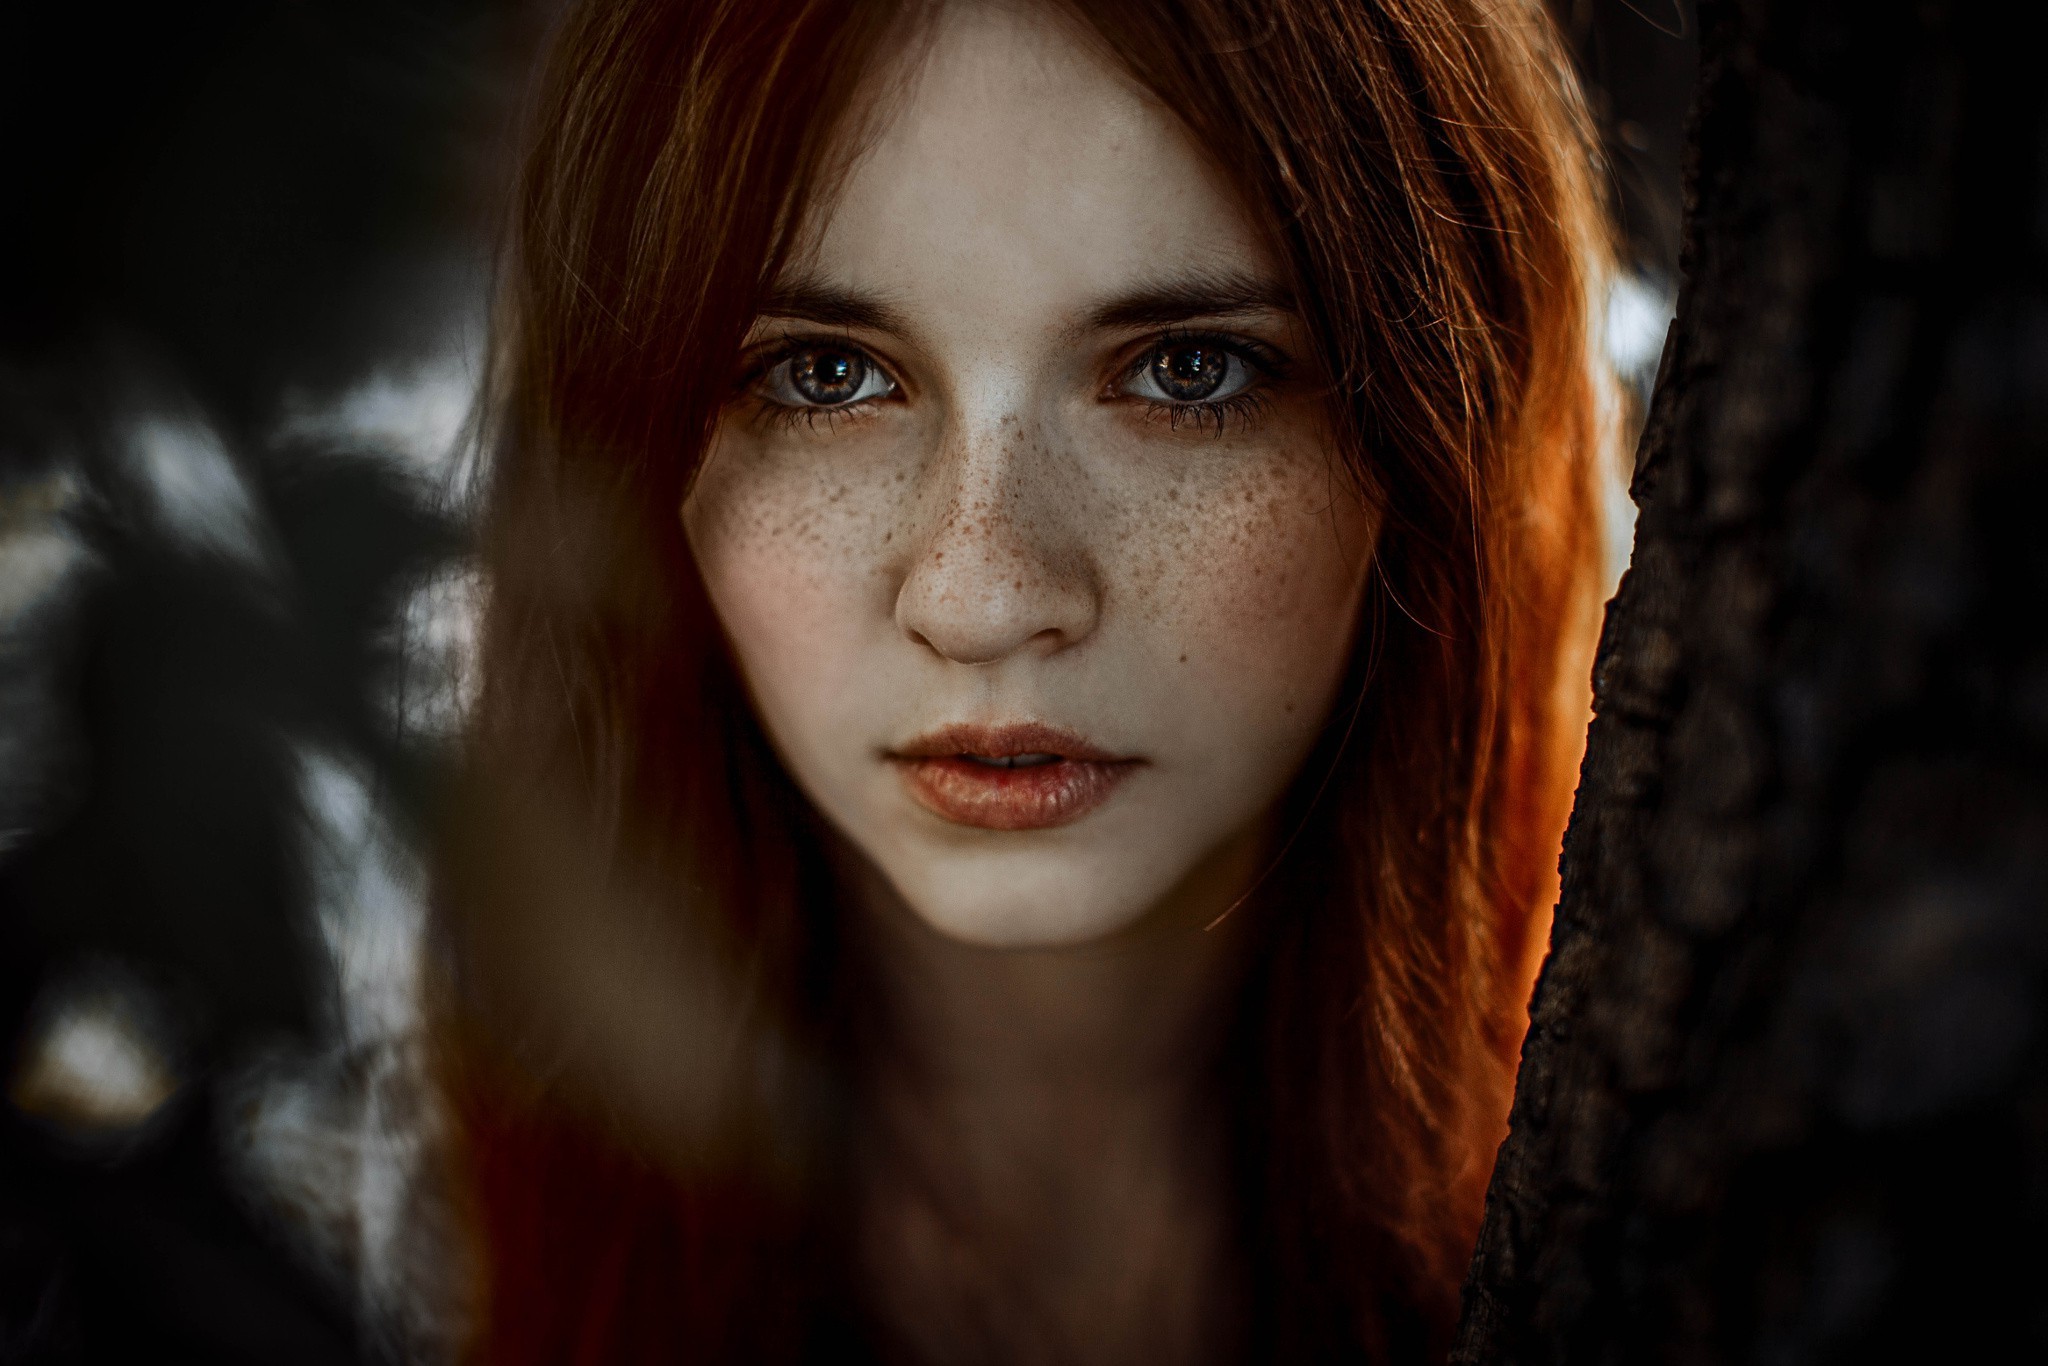 Women Model Redhead Face Freckles Hazel Eyes Portrait Wallpapers Hd Desktop And Mobile